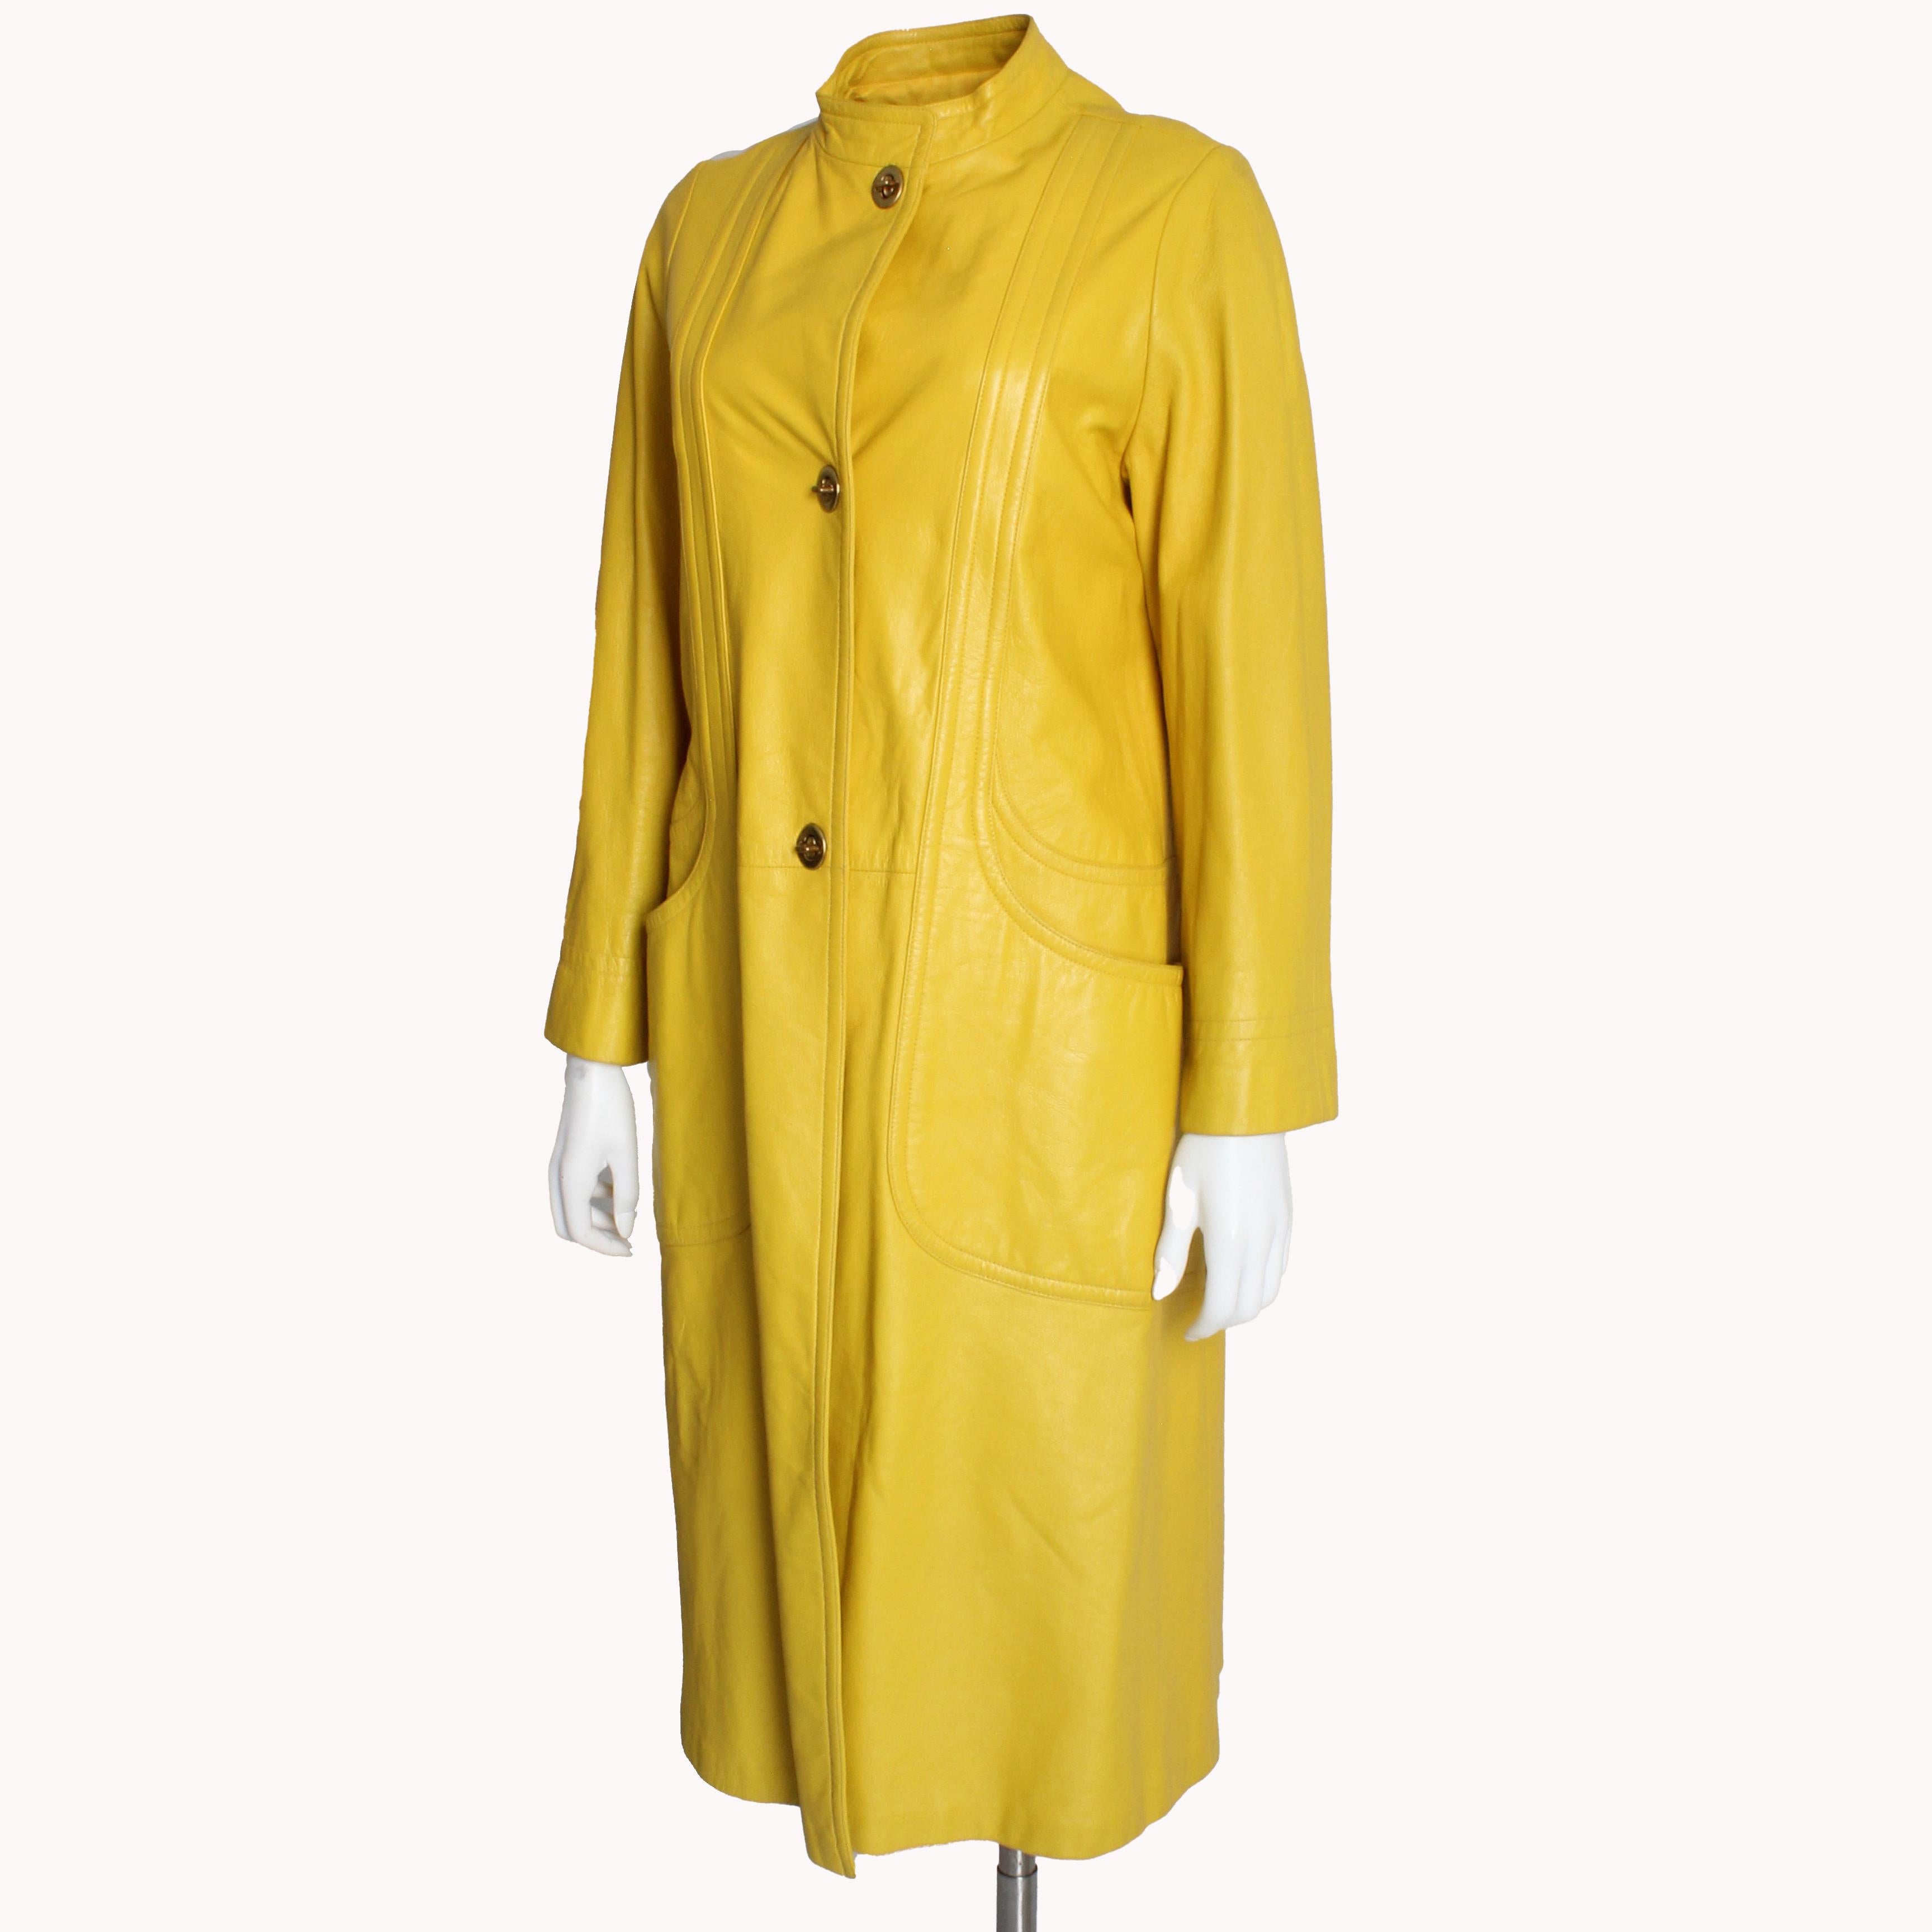 Bonnie Cashin for Sills - Manteau long en cuir jaune vif, vintage, années 60  Unisexe en vente